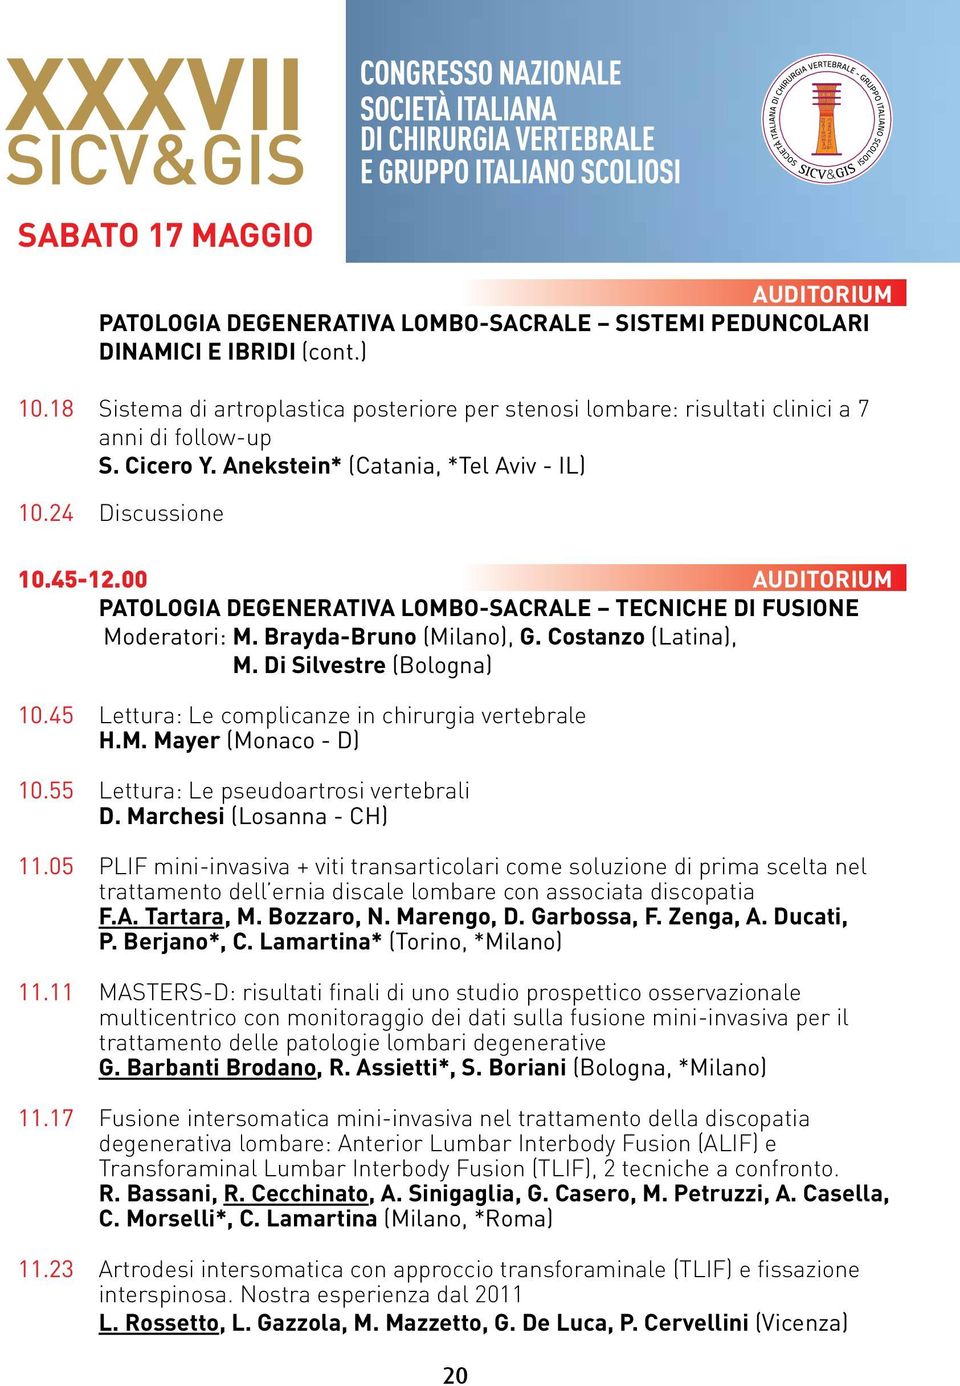 00 AUDITORIUM PATOLOGIA DEGENERATIVA LOMBO-SACRALE TECNICHE DI FUSIONE Moderatori: M. Brayda-Bruno (Milano), G. Costanzo (Latina), M. Di Silvestre (Bologna) 10.